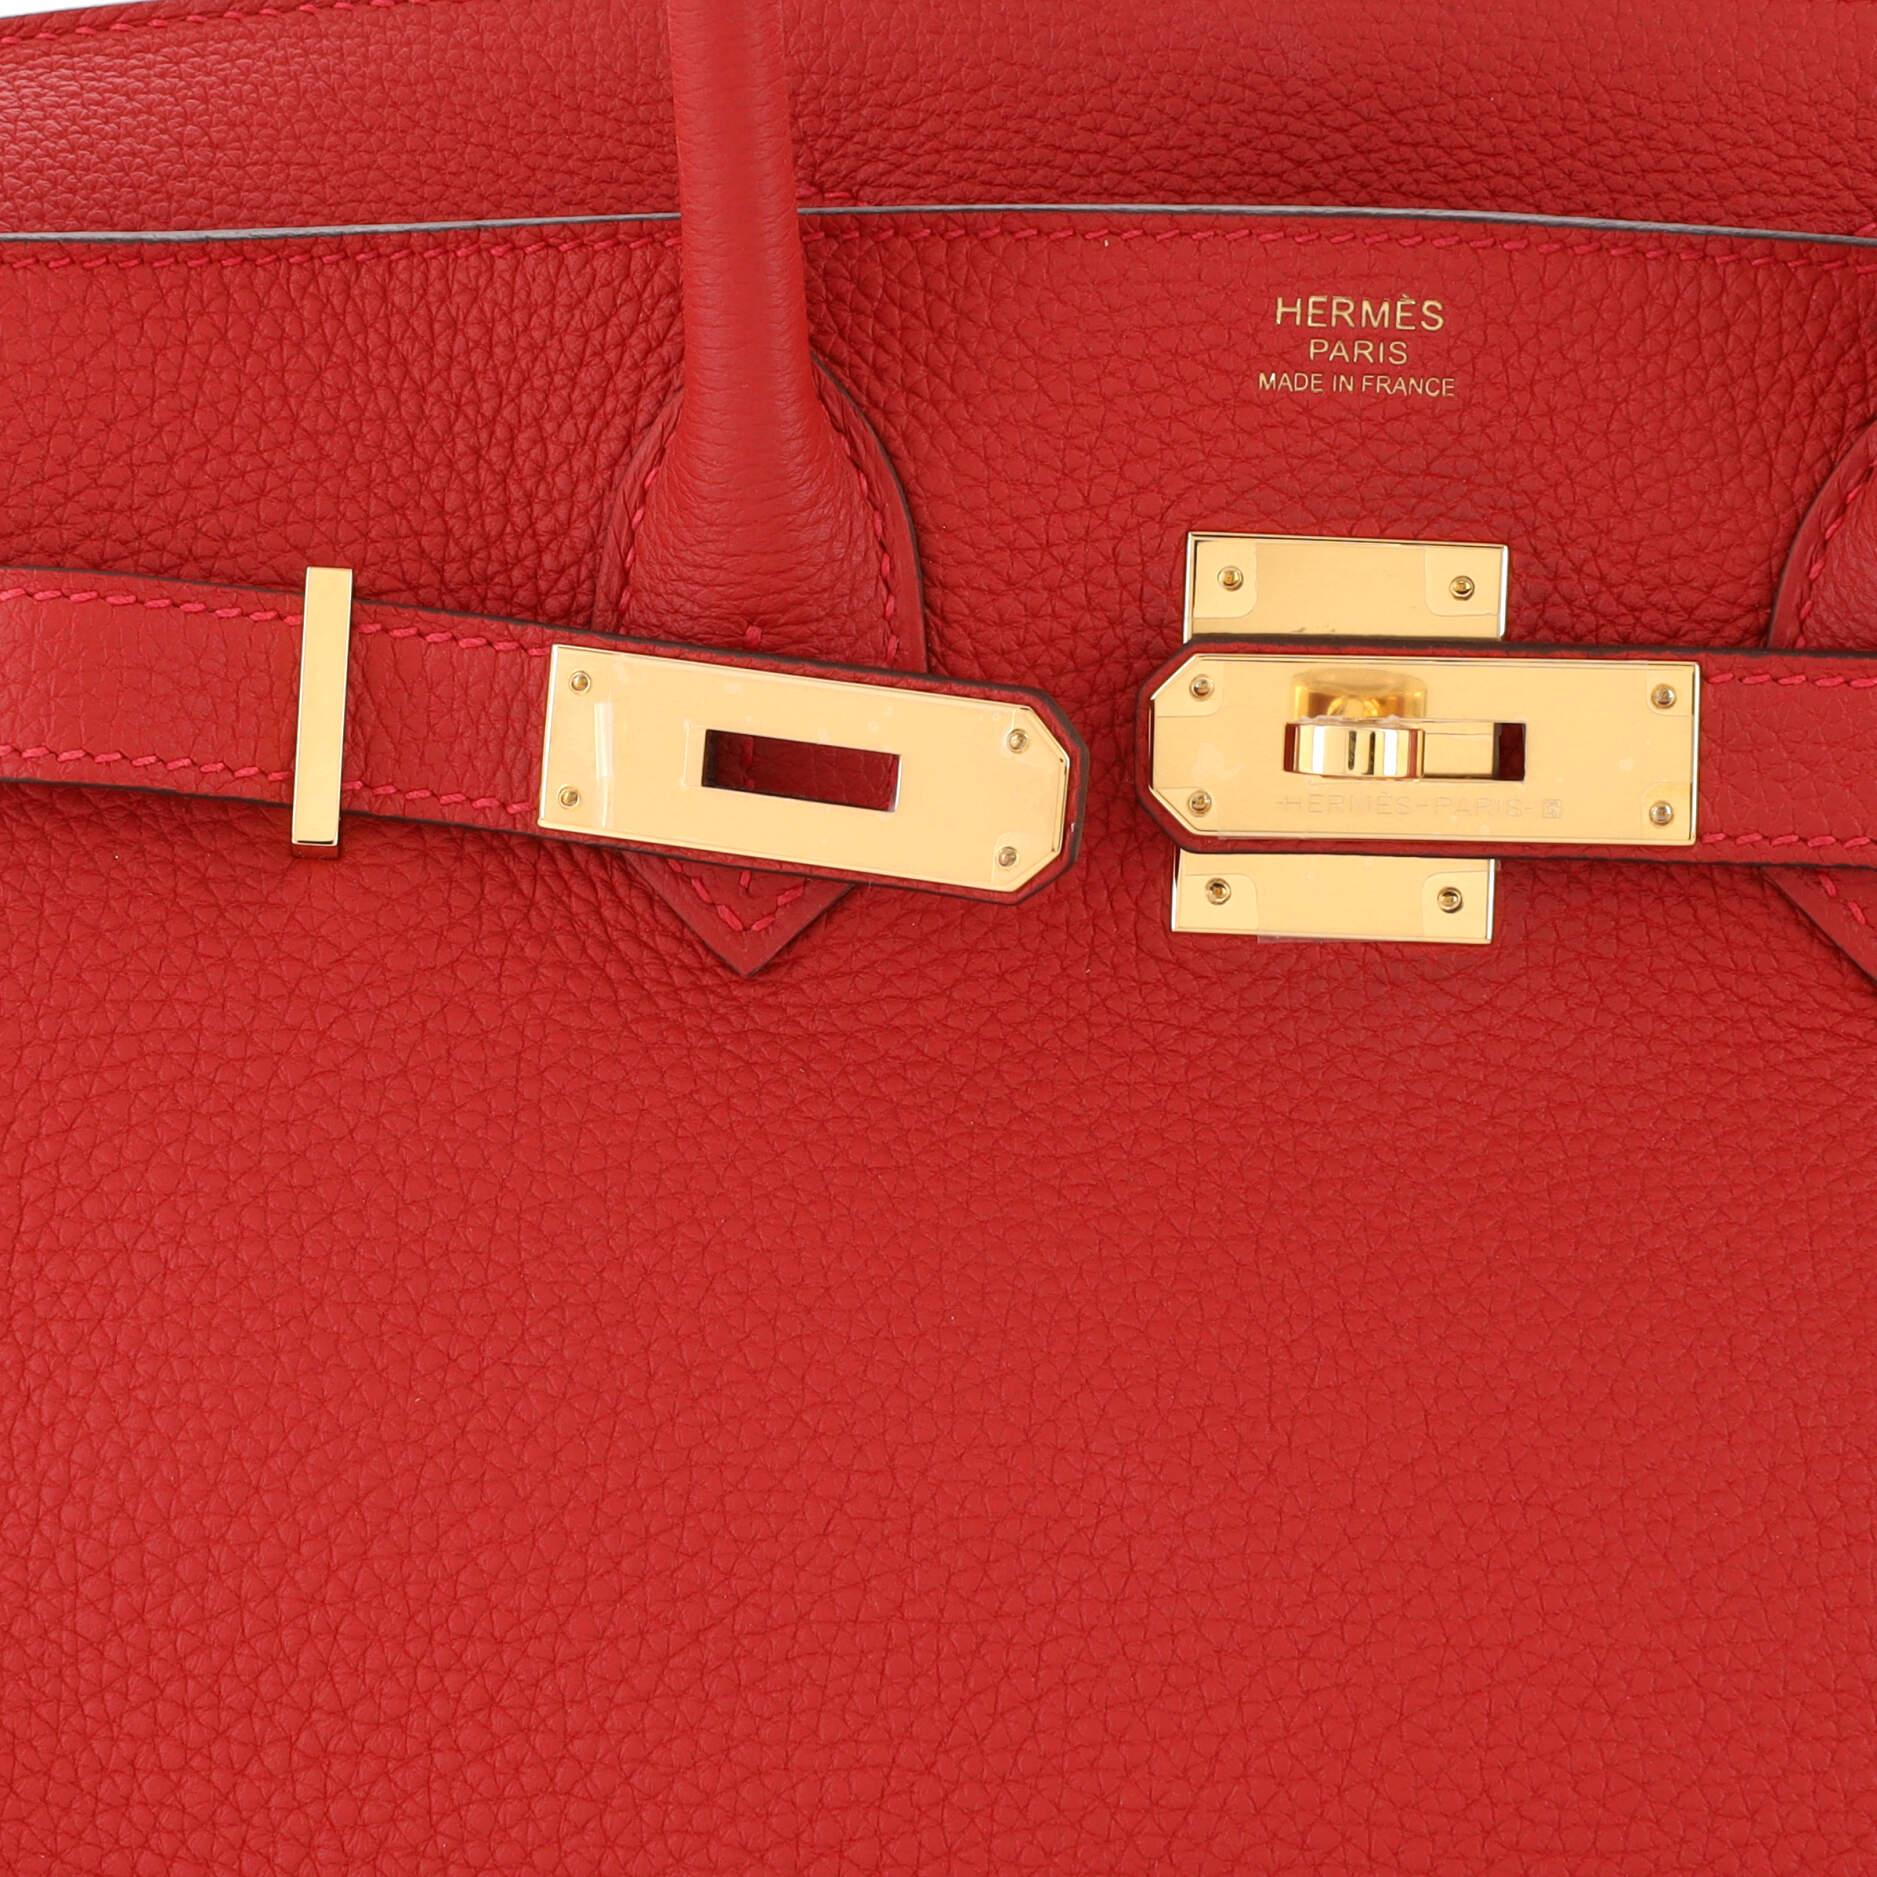 Hermes Birkin Handbag Rouge Vif Togo with Gold Hardware 30 3